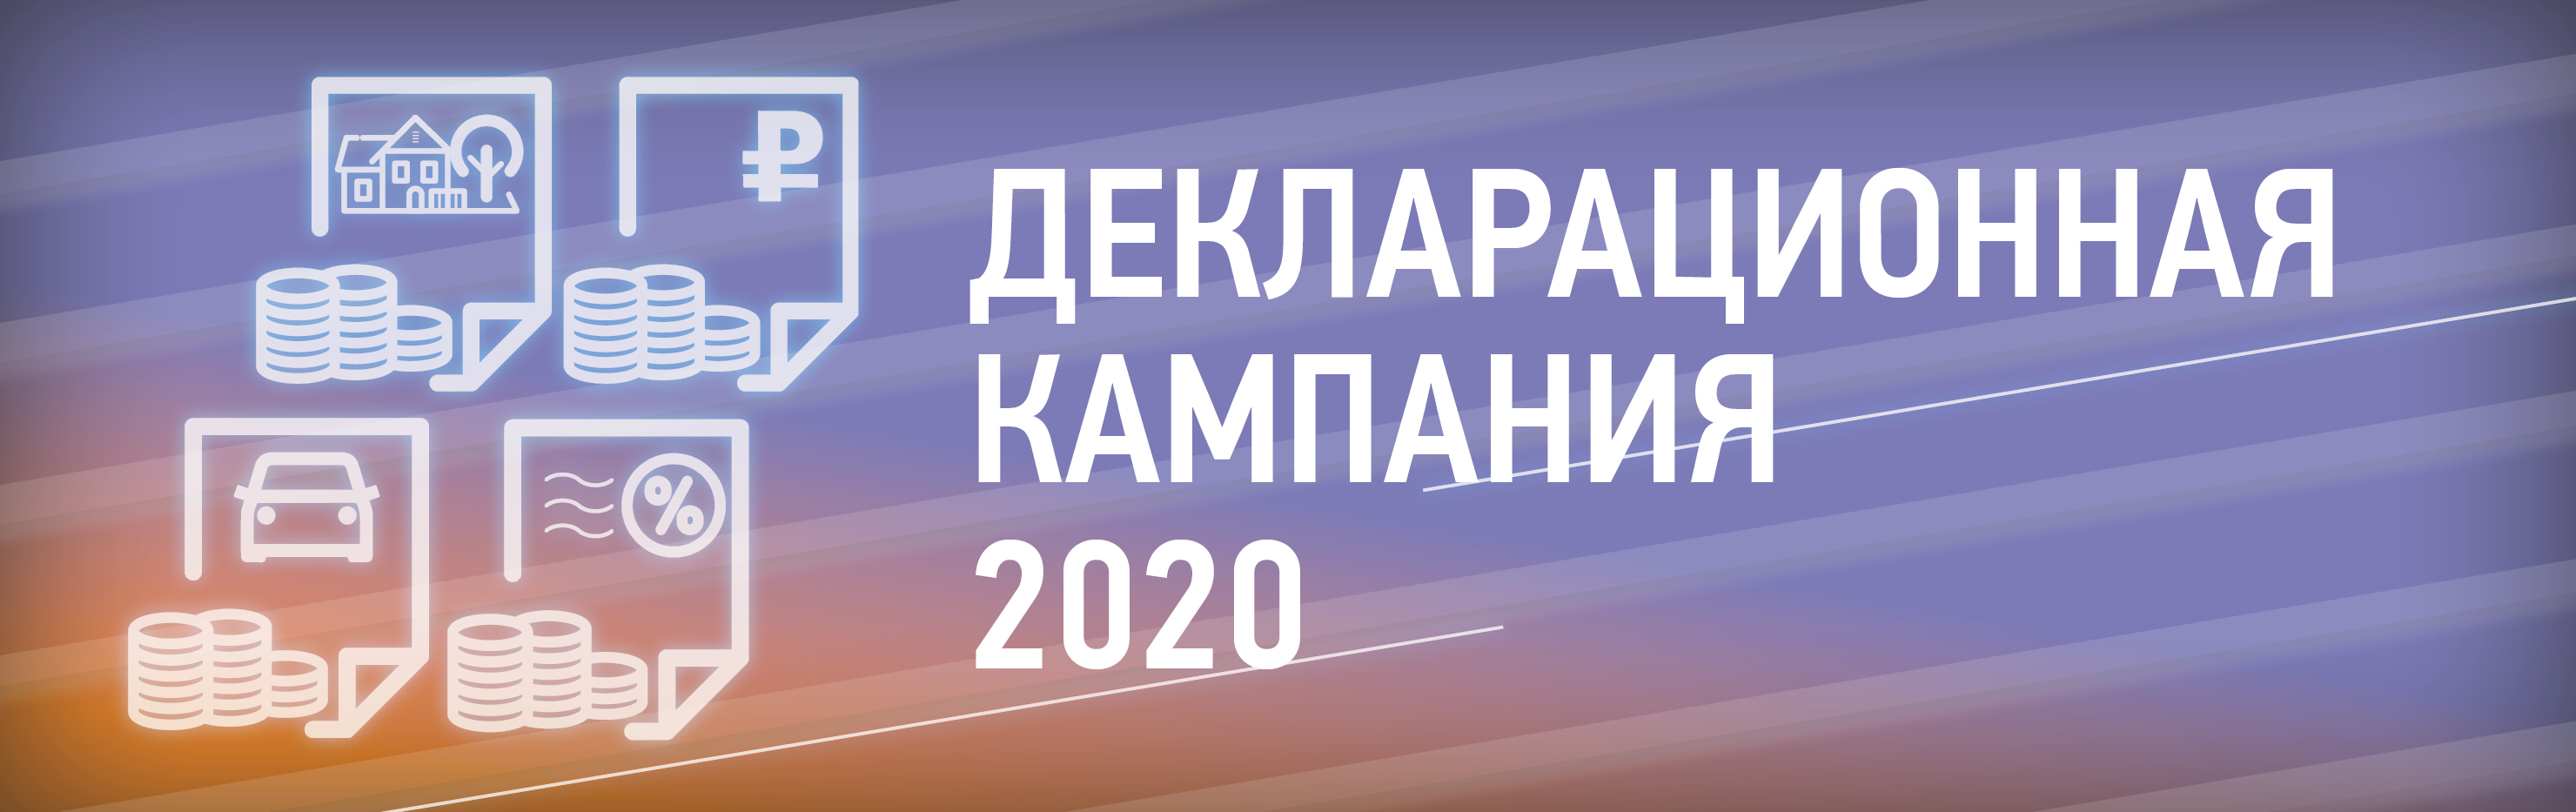 Декларационная кампания 2020